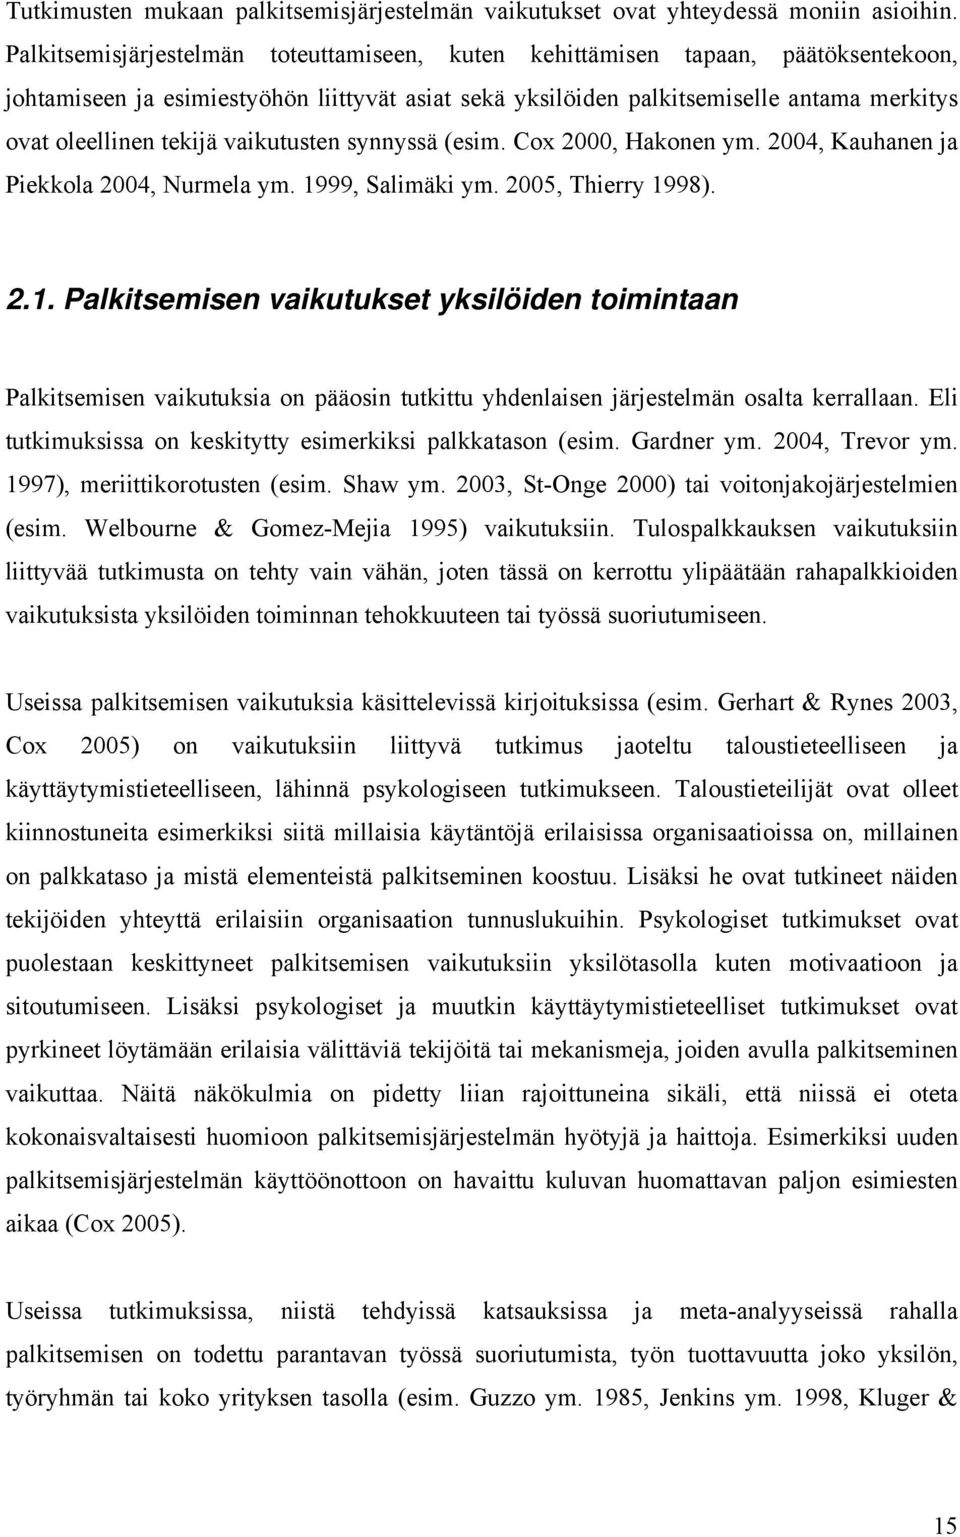 vaikutusten synnyssä (esim. Cox 2000, Hakonen ym. 2004, Kauhanen ja Piekkola 2004, Nurmela ym. 19